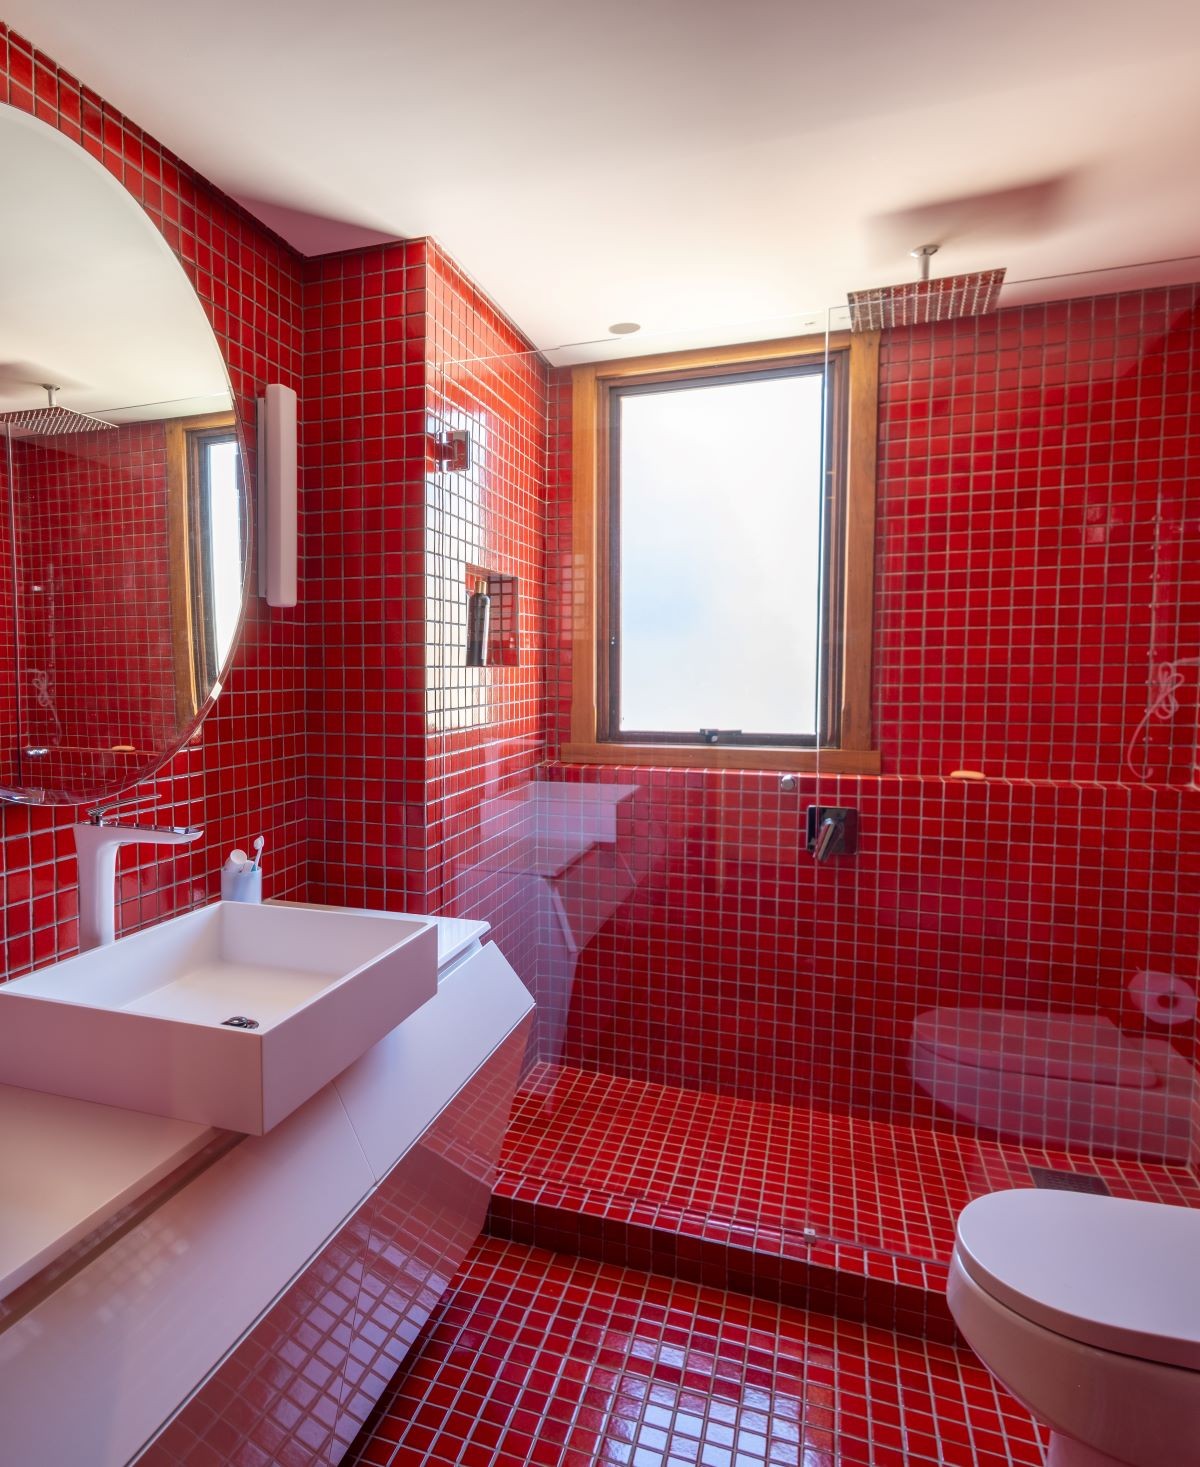 BANHEIRO | Com pastilhas coloridas, o banheiro segue o tom de decoração do projeto e aposta em tons vibrantes. Revestimento é da Uniflex e metais da Puxadores e Cia (Foto: Divulgação / Lucas Franck / NMLSS)